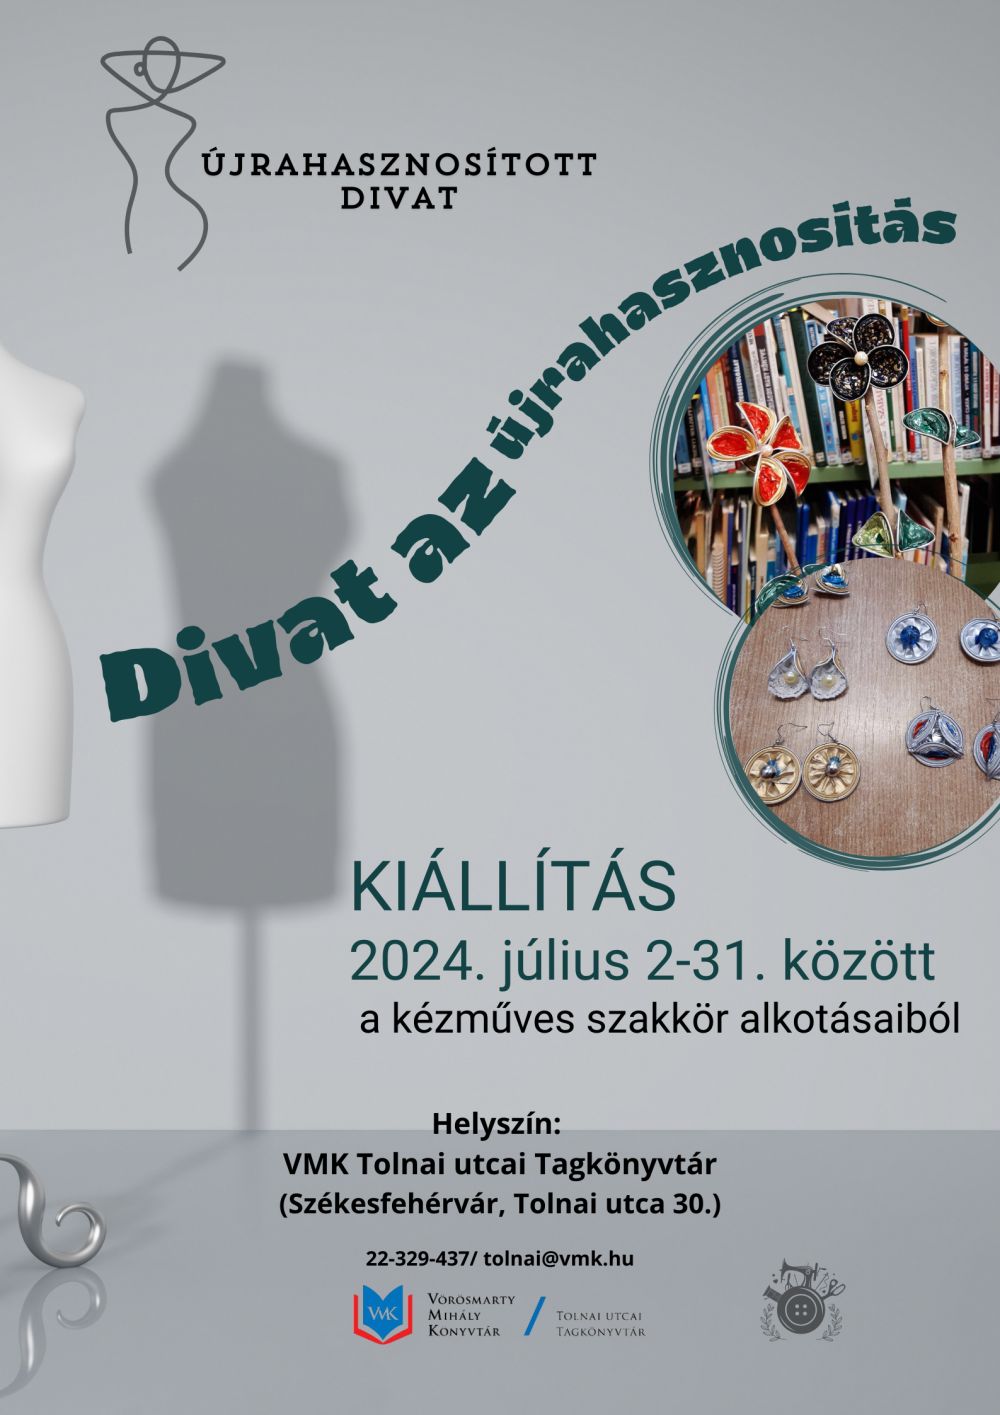 Divat az újrahasznosítás – különleges kiállítás látható július 2-től a Tolnai utcai könyvtárban